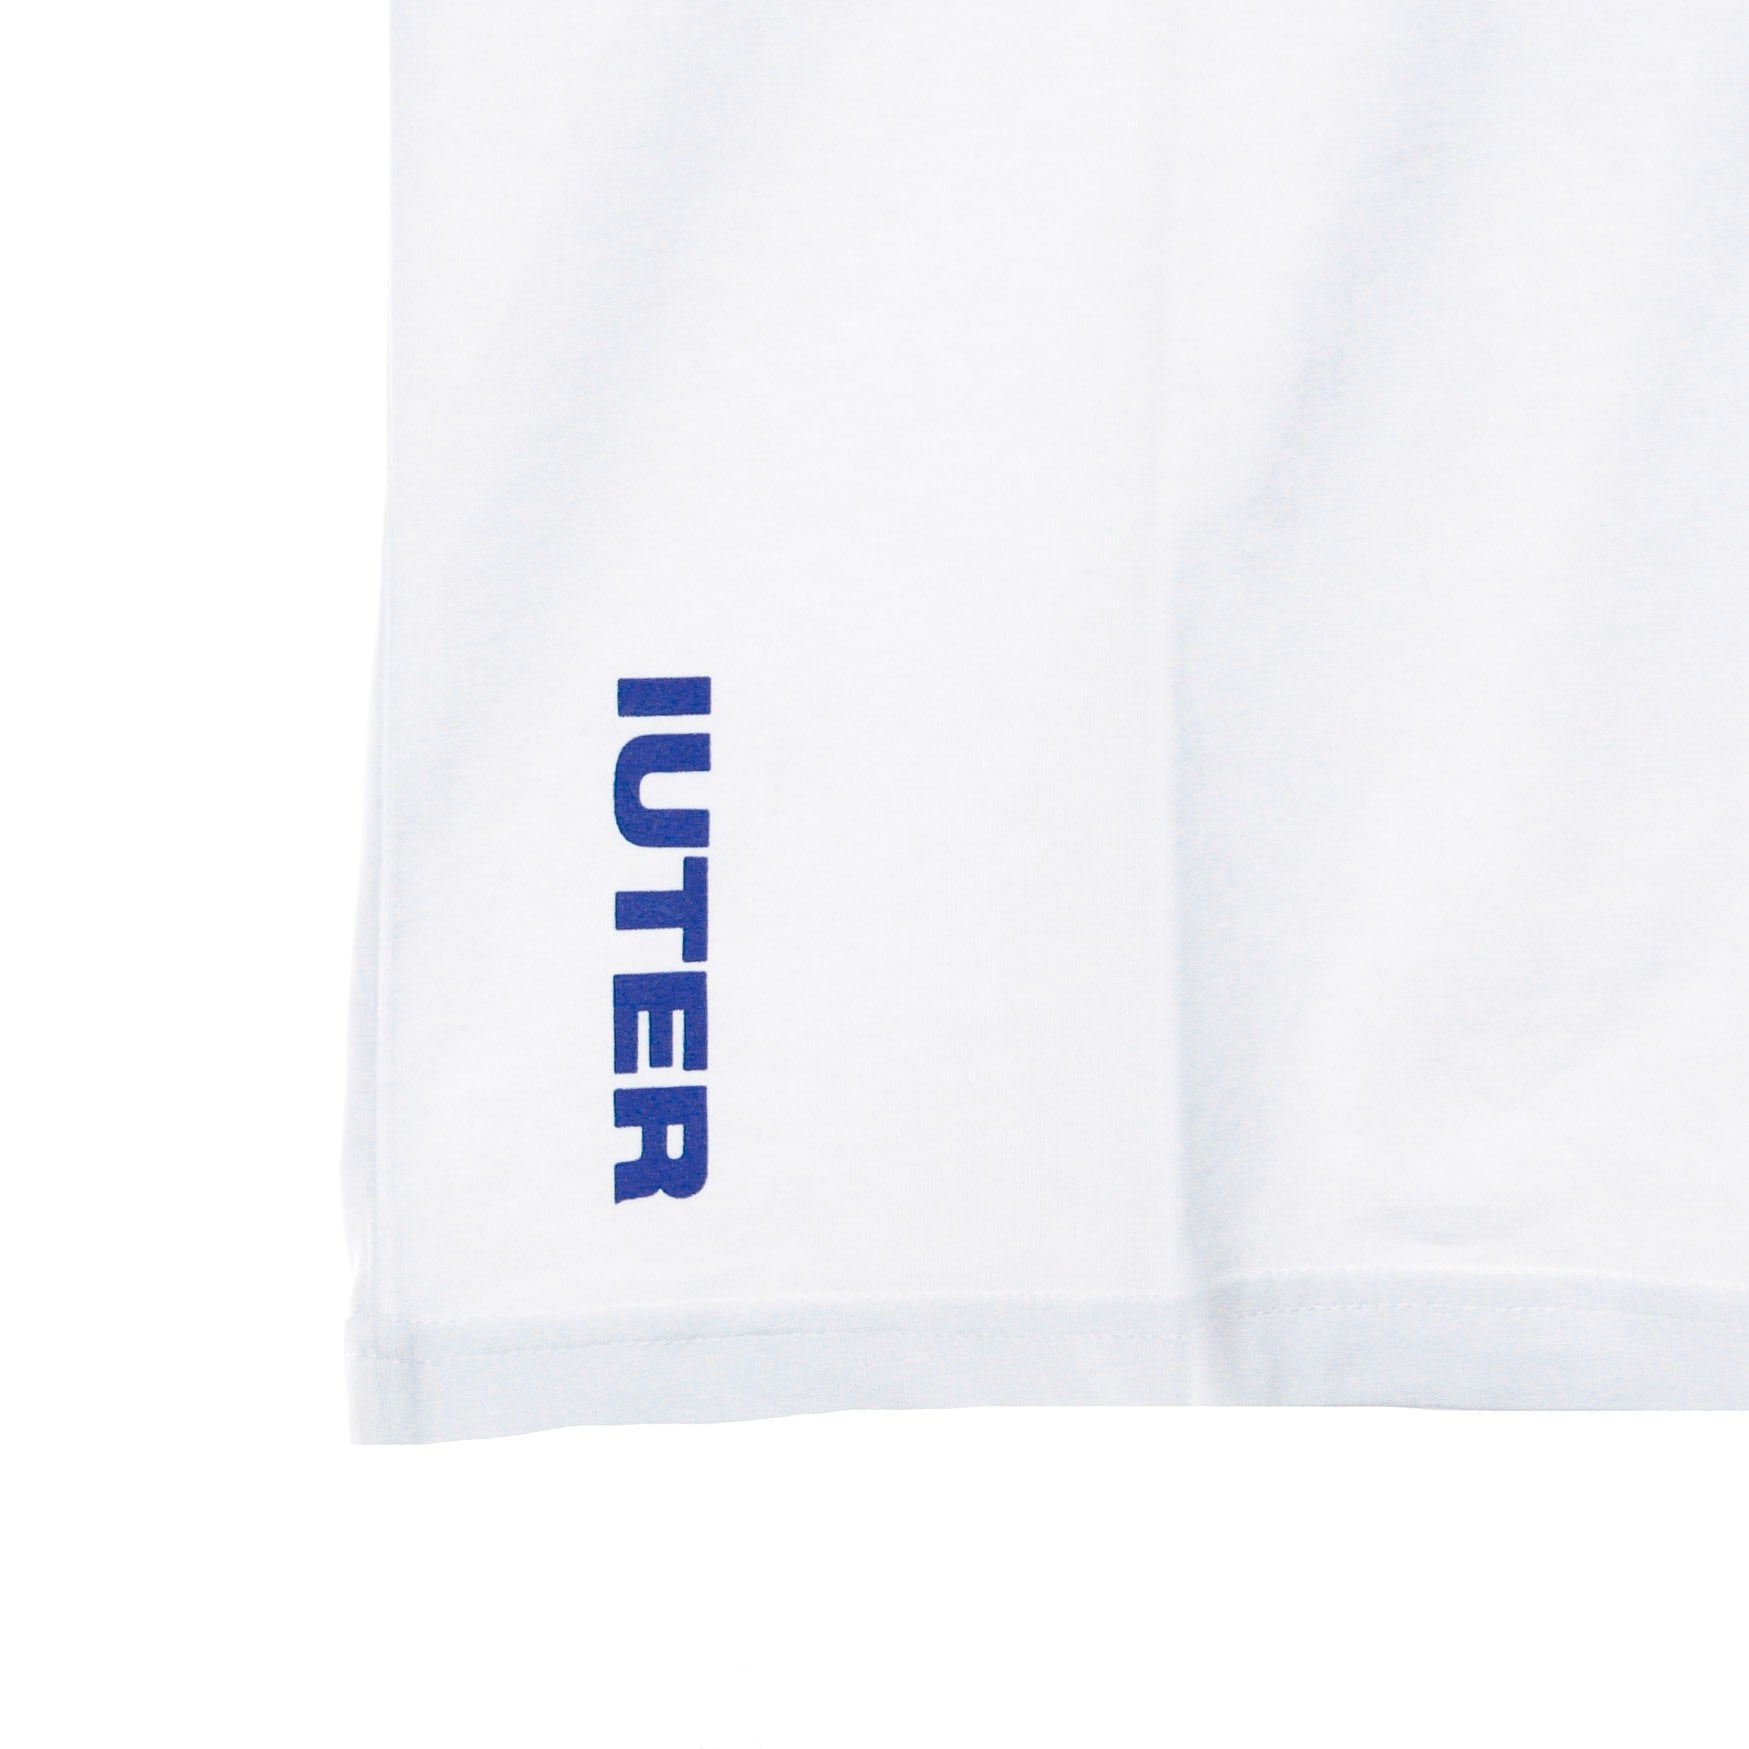 Men's Logo Tee White/blue T-shirt